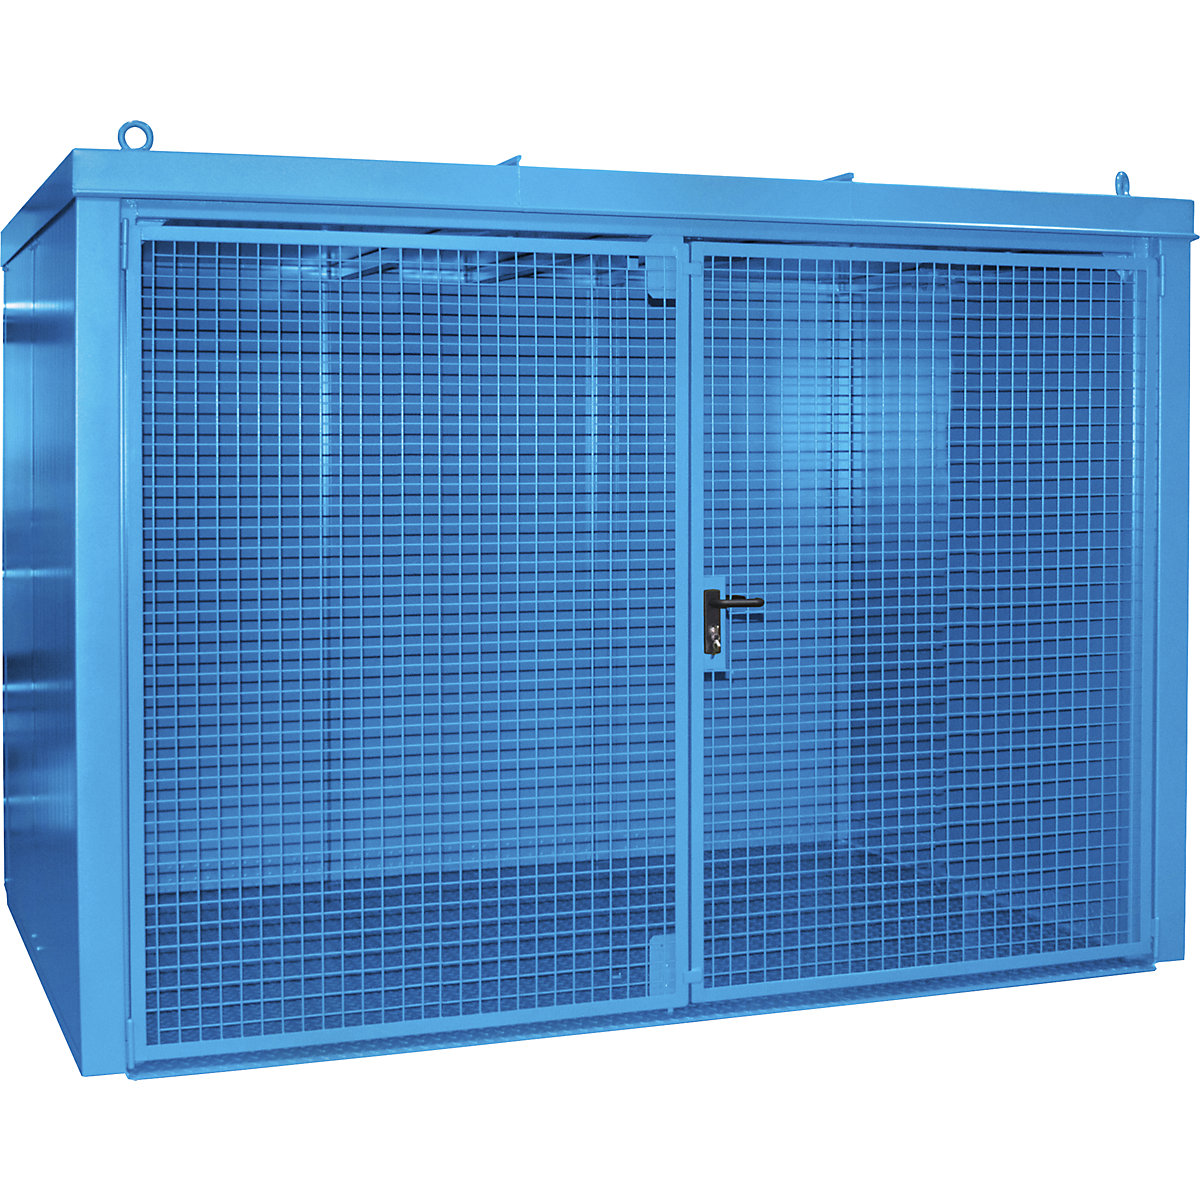 Gázpalacktároló konténer, tűzálló – eurokraft pro, 60 db, egyenként 230 mm átmérőjű palackhoz, kék-6